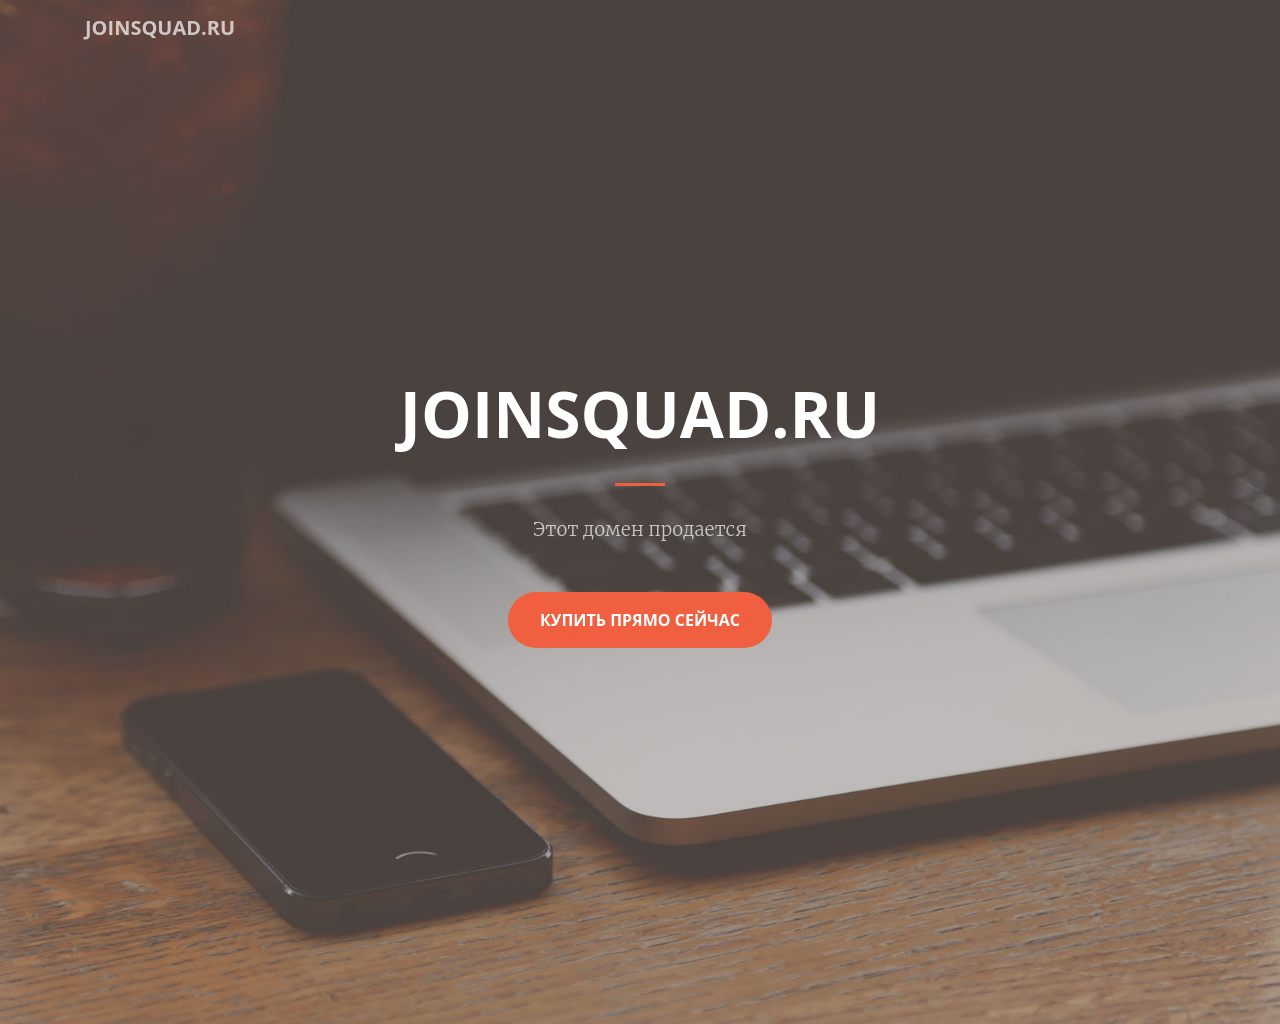 joinsquad.ru